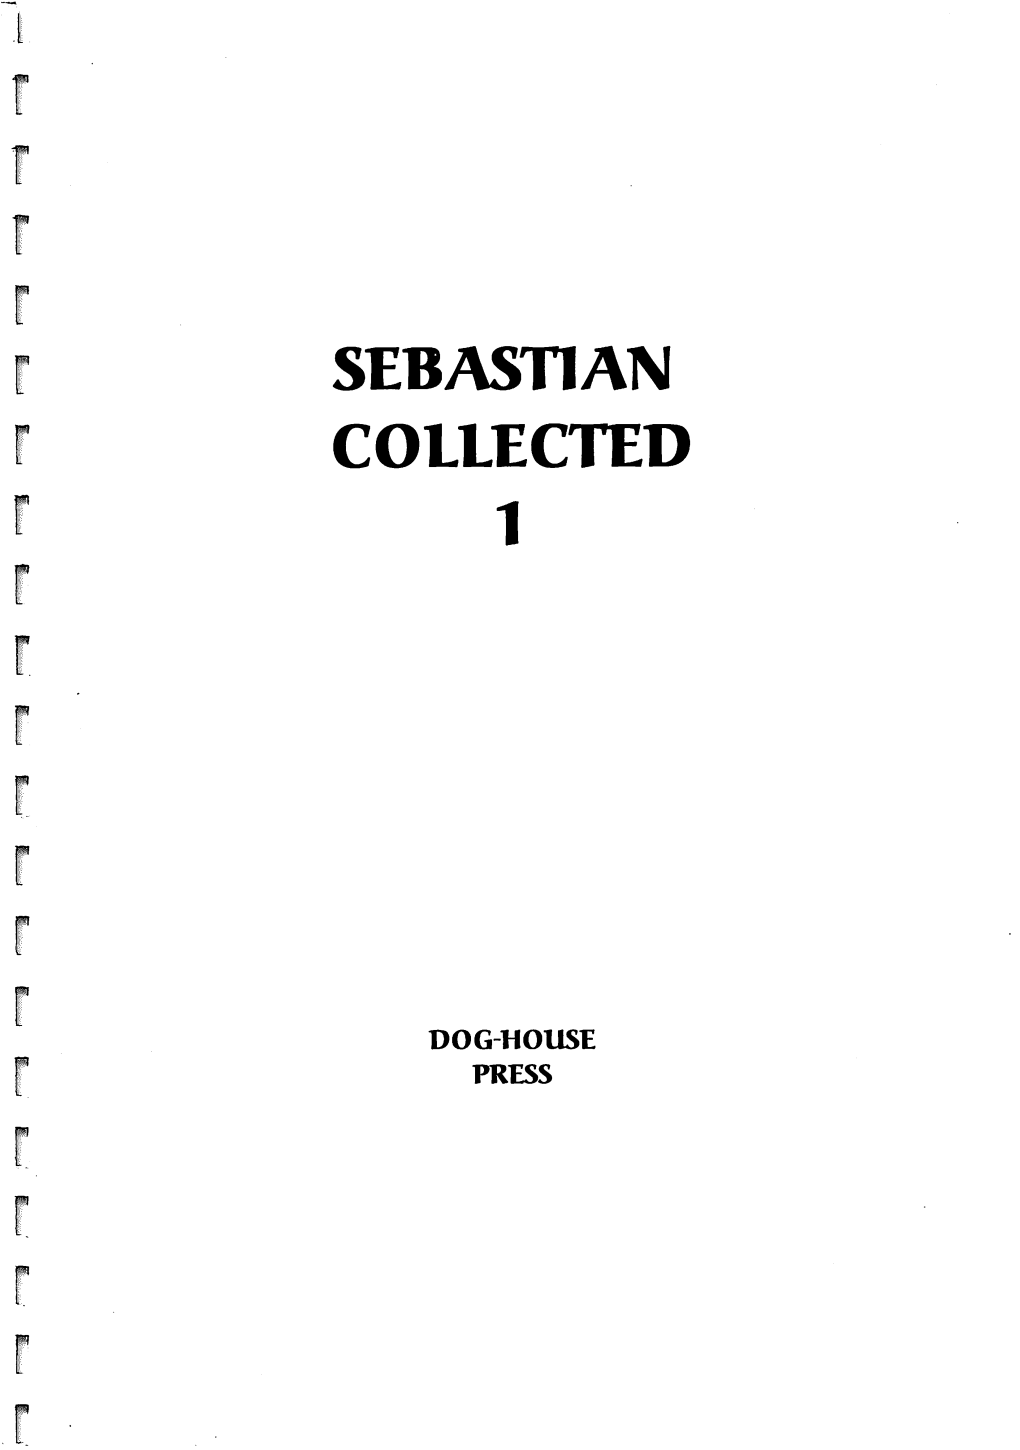 Sebastian Collected 1